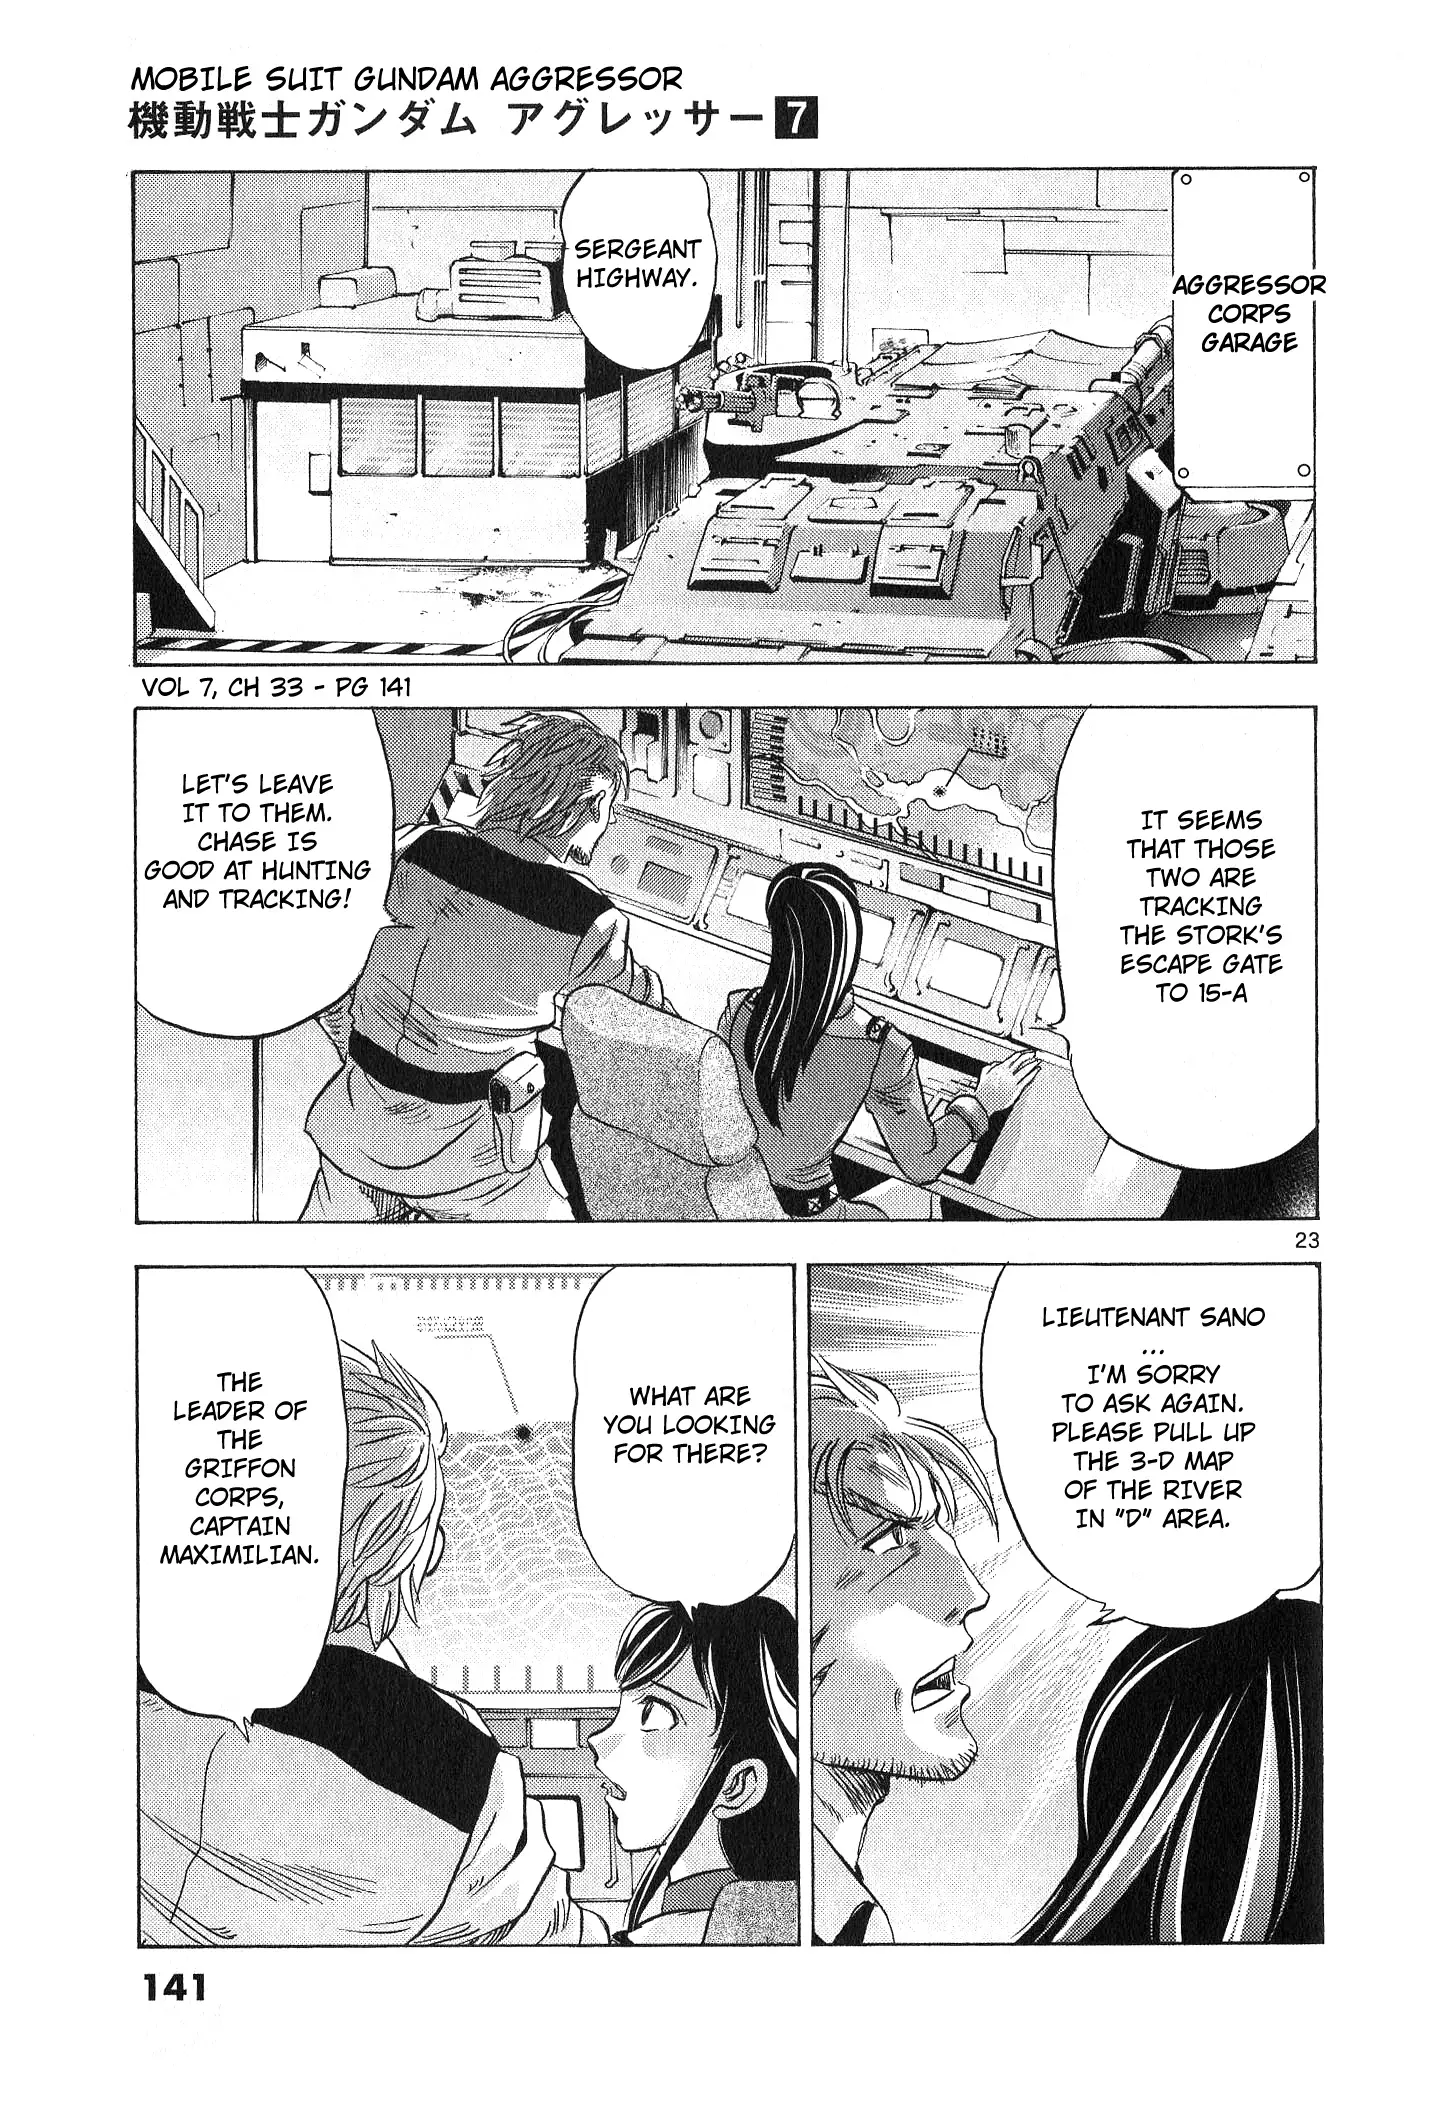 Mobile Suit Gundam Aggressor - 33 page 20-47c6a5d7